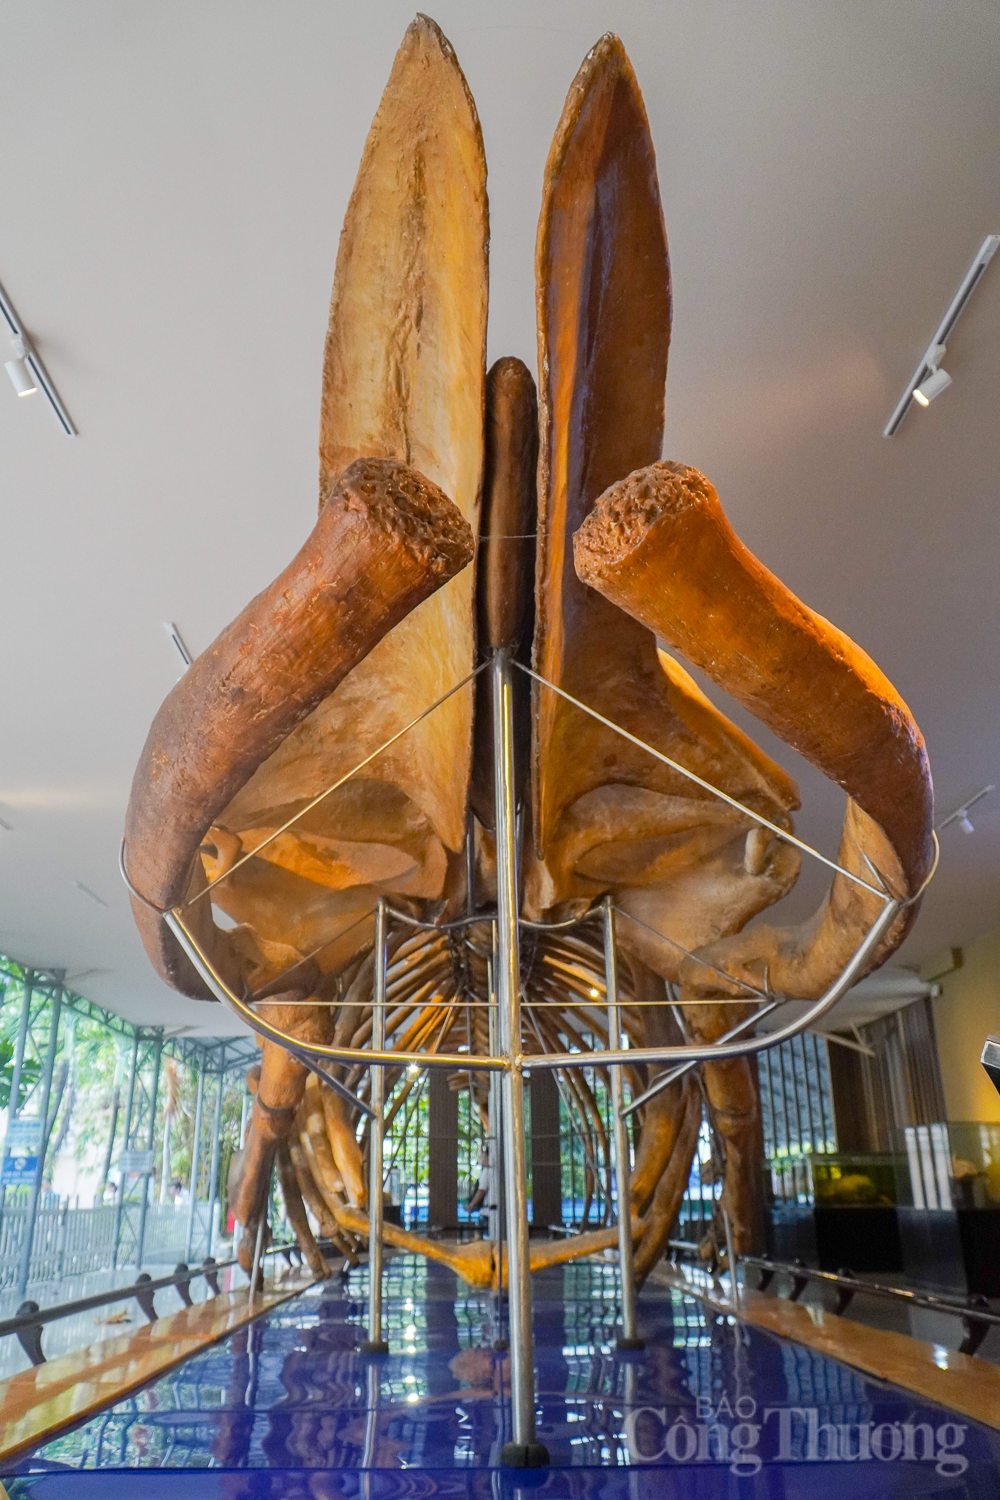 Chiêm ngưỡng bộ xương cá voi dài 18m, nặng 10 tấn ở Nha Trang